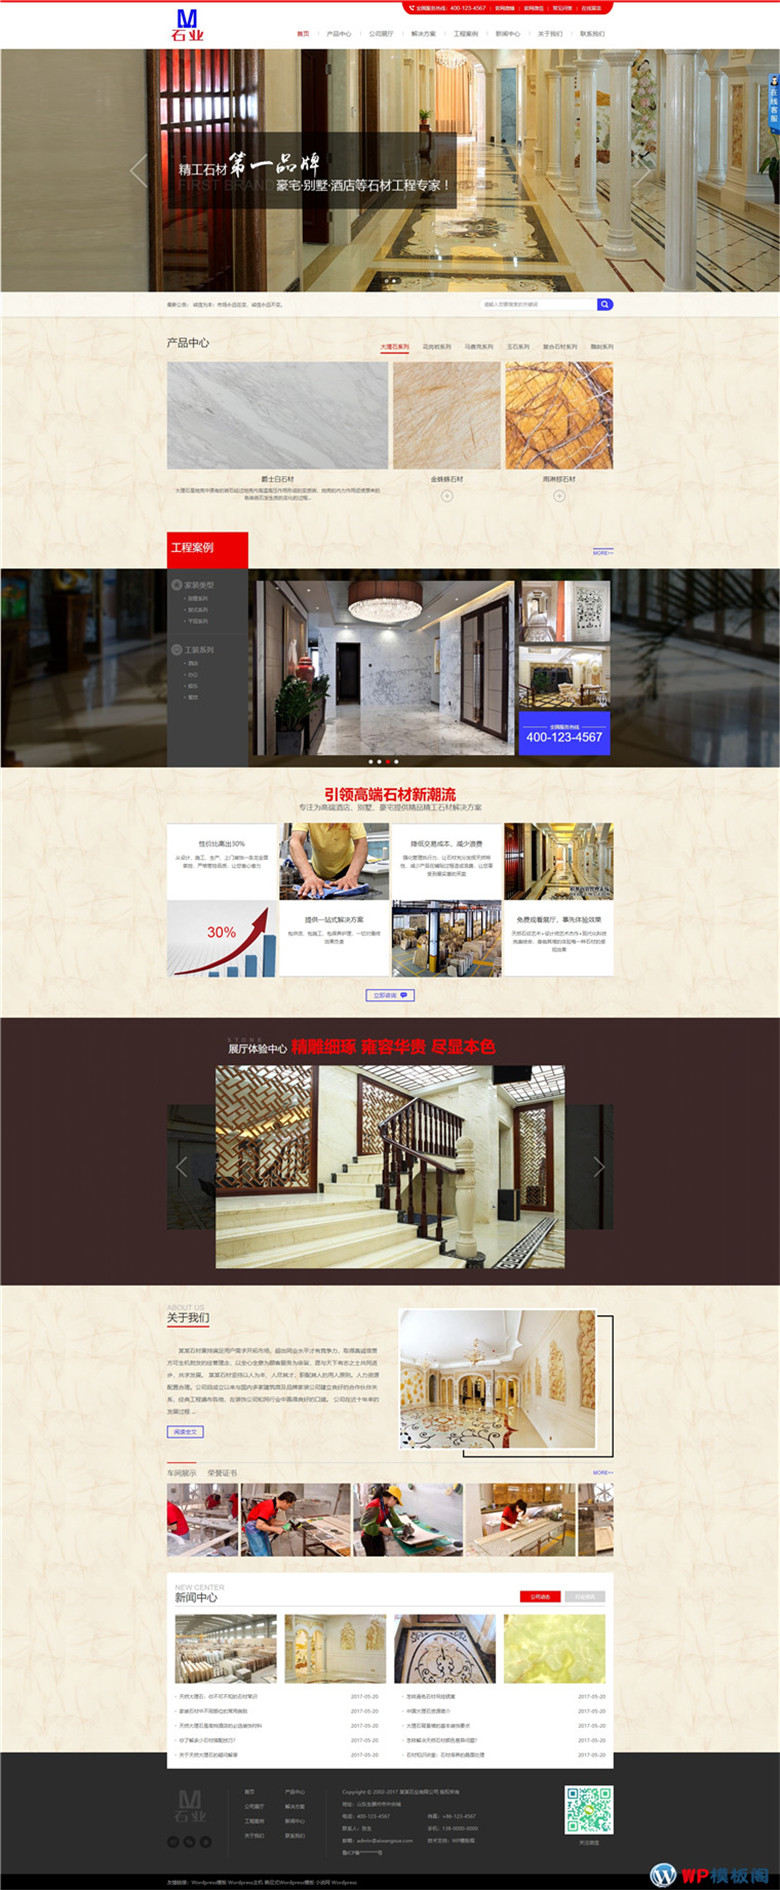 营销型石业大理石瓷砖地板网站WordPress模板含手机站演示图